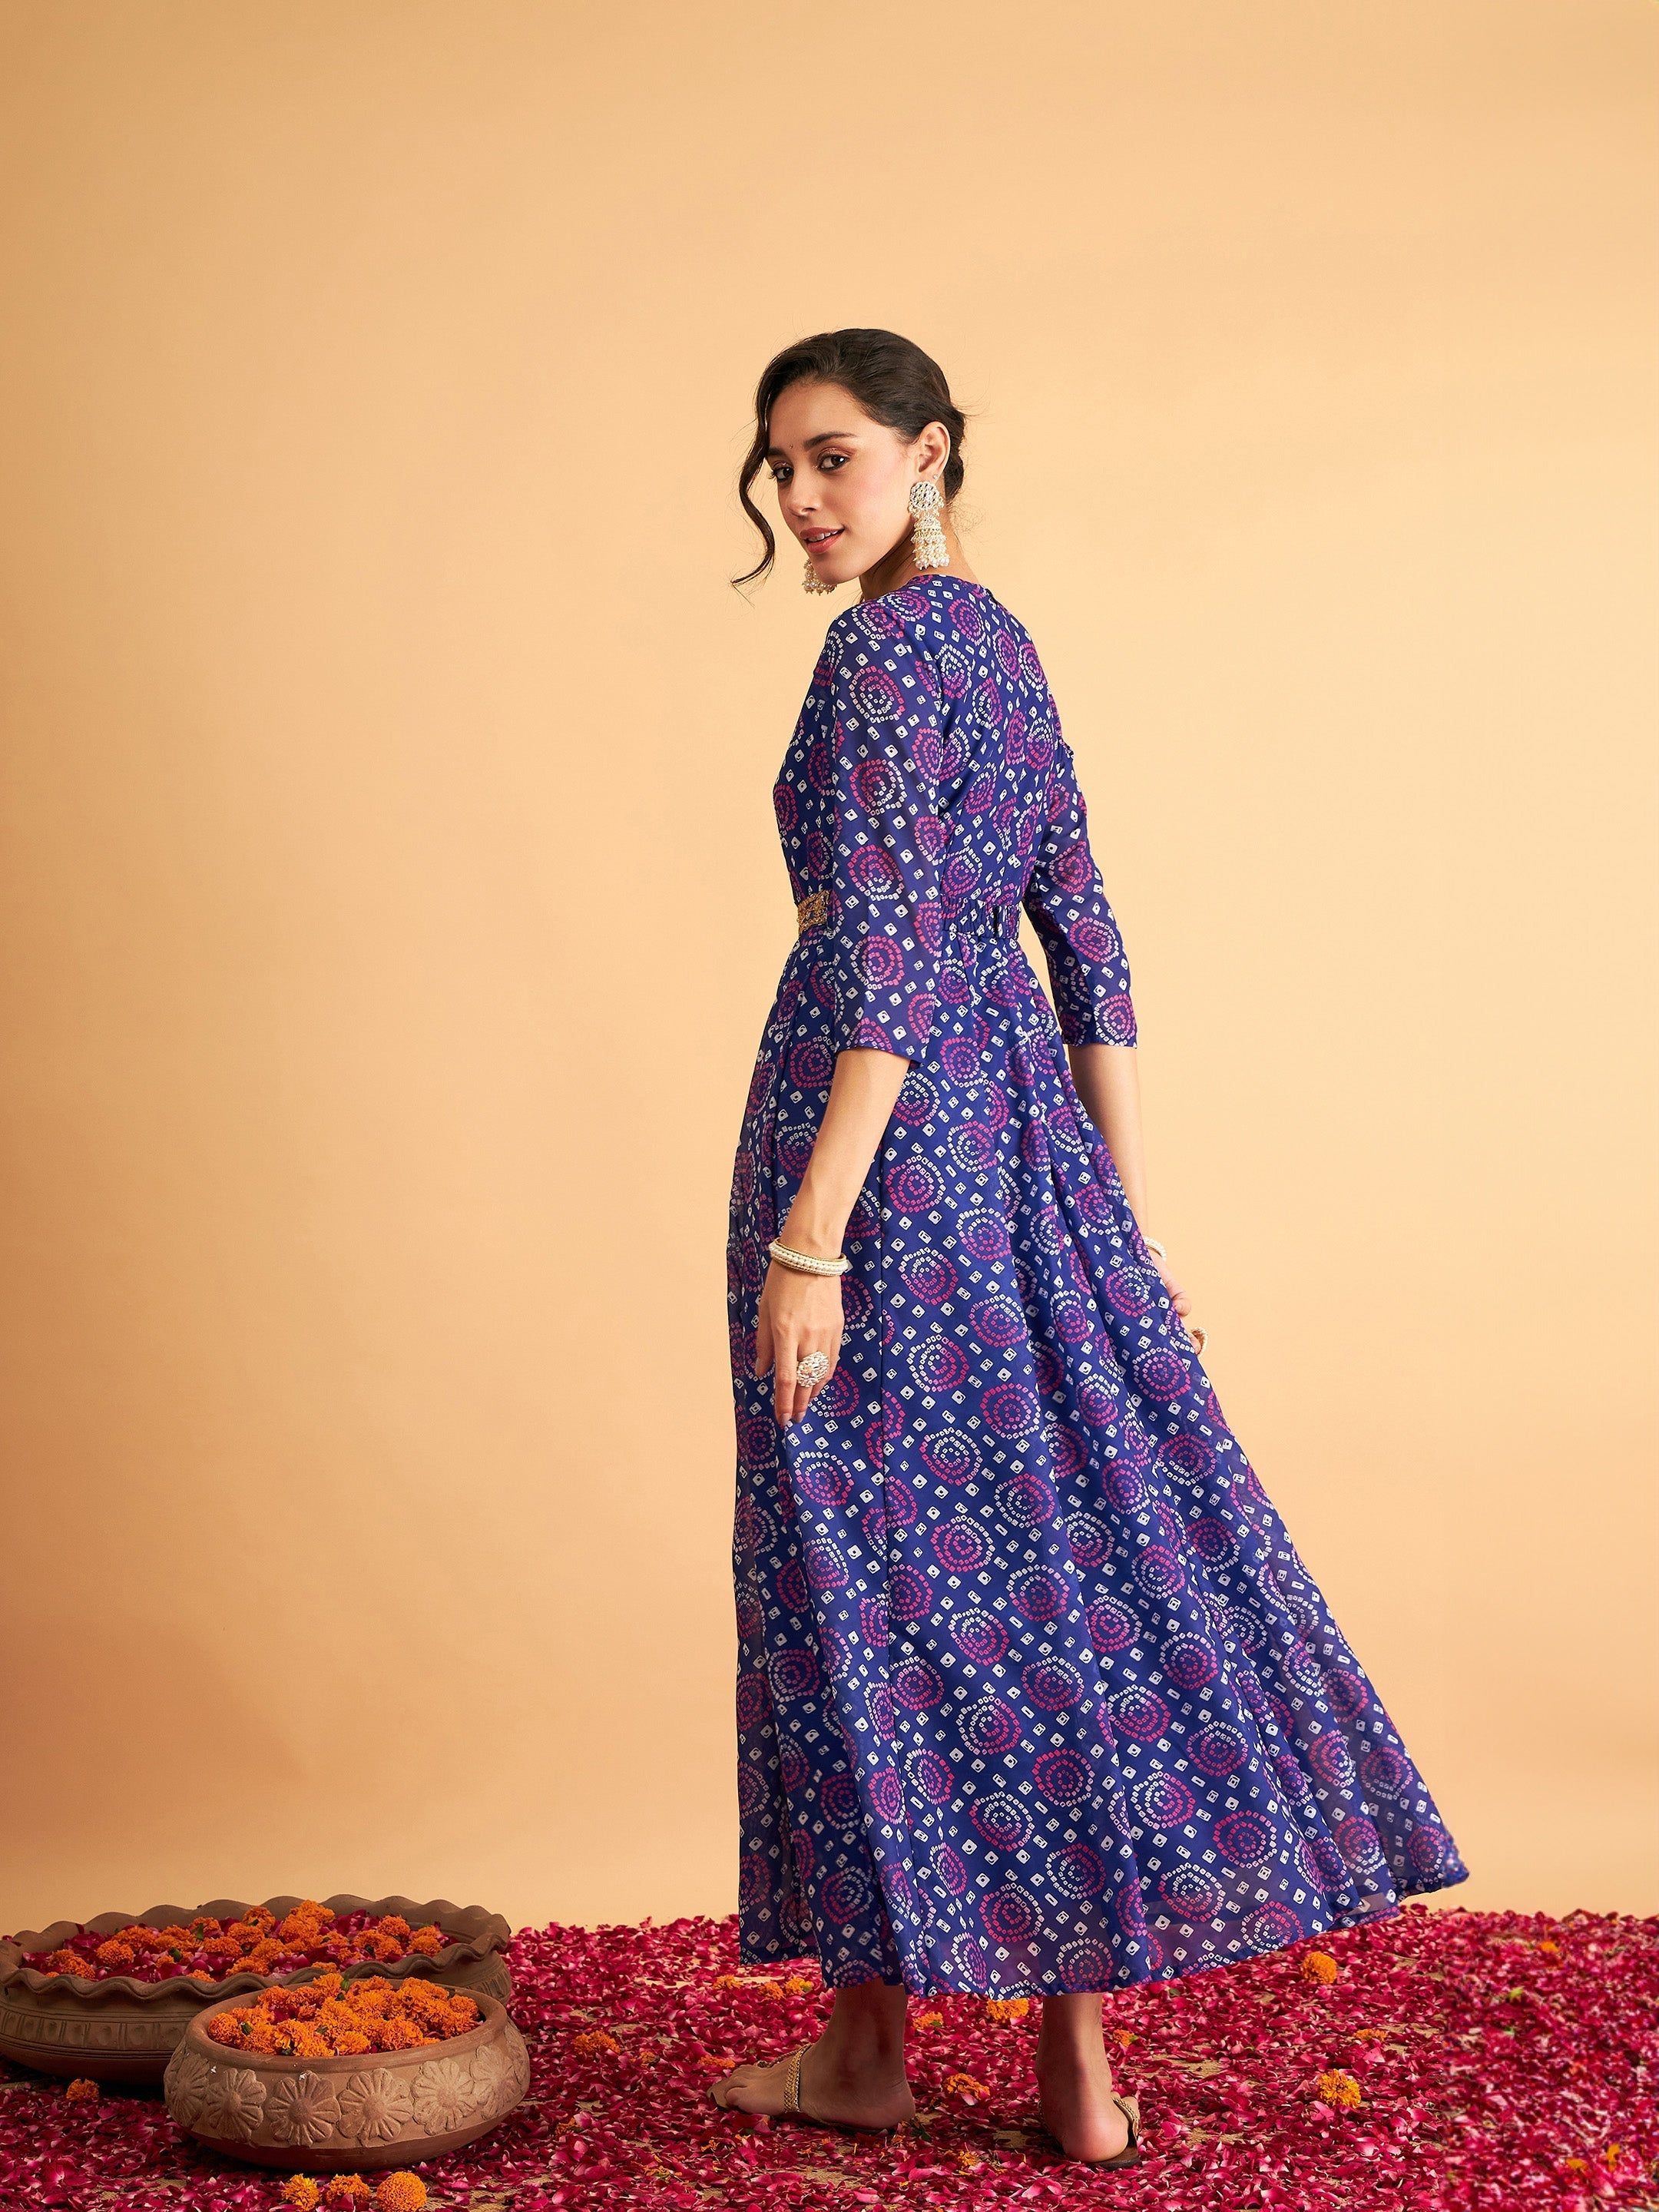 Women's Royal Blue & White Bandhej Anarkali Dress - Lyush